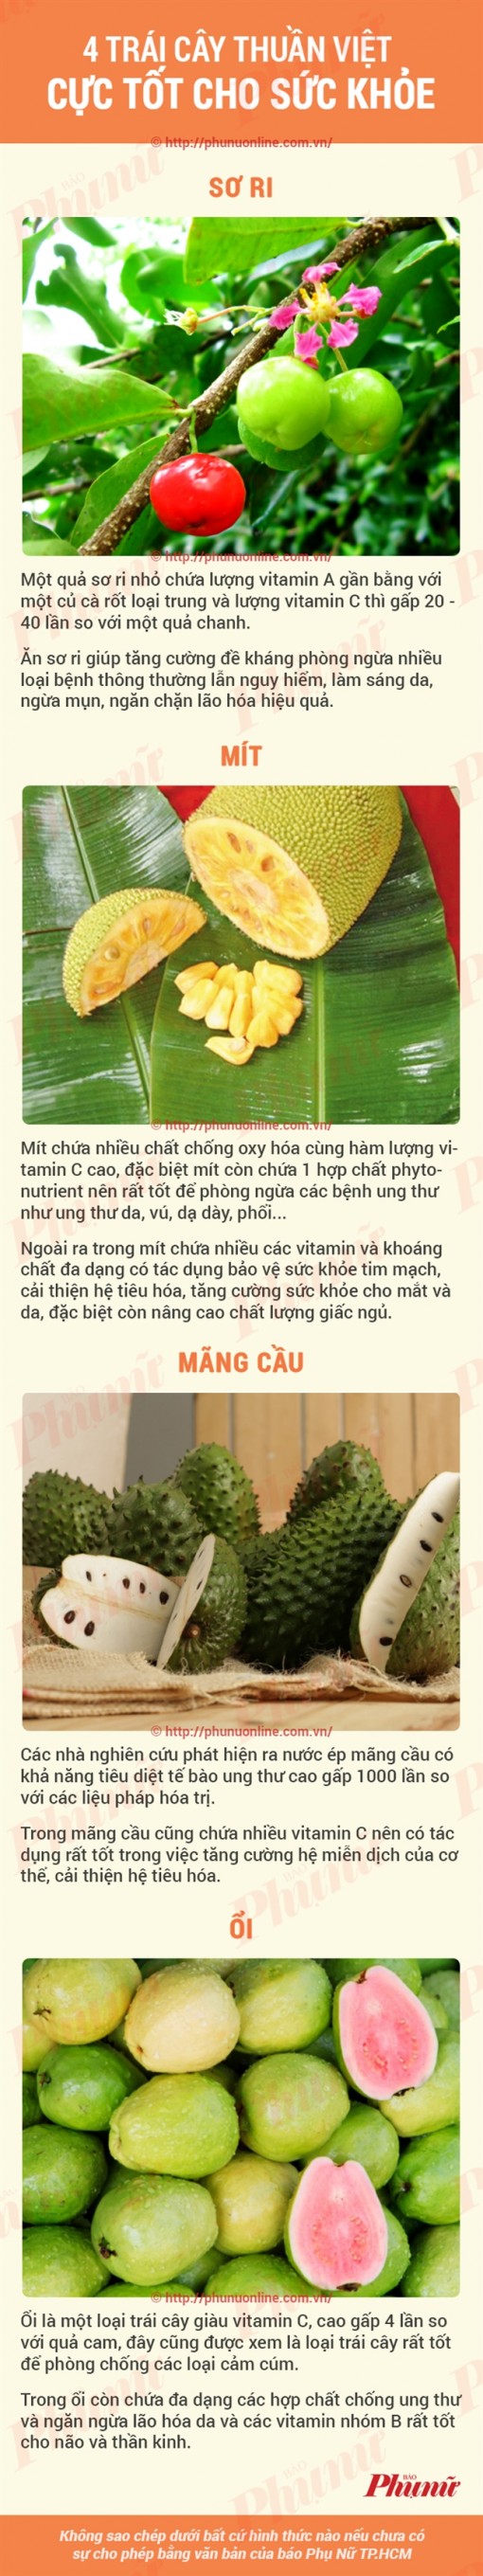 4 loại trái cây phổ biến ở Việt Nam rất tốt cho sức khỏe